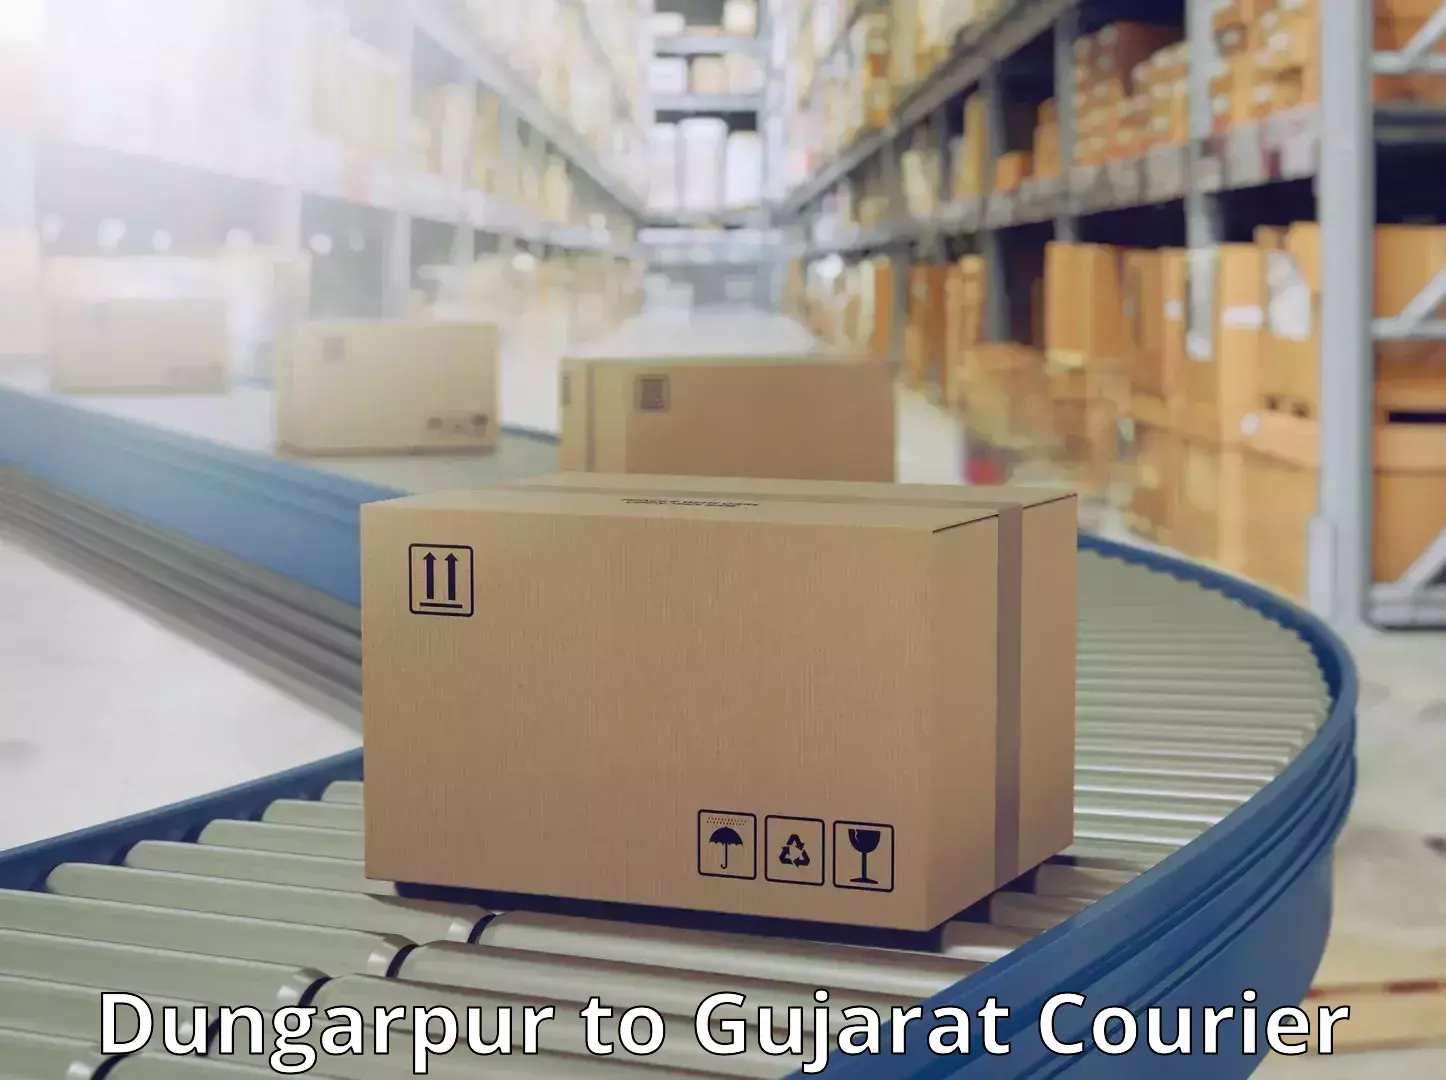 Nationwide courier service Dungarpur to Gandhinagar